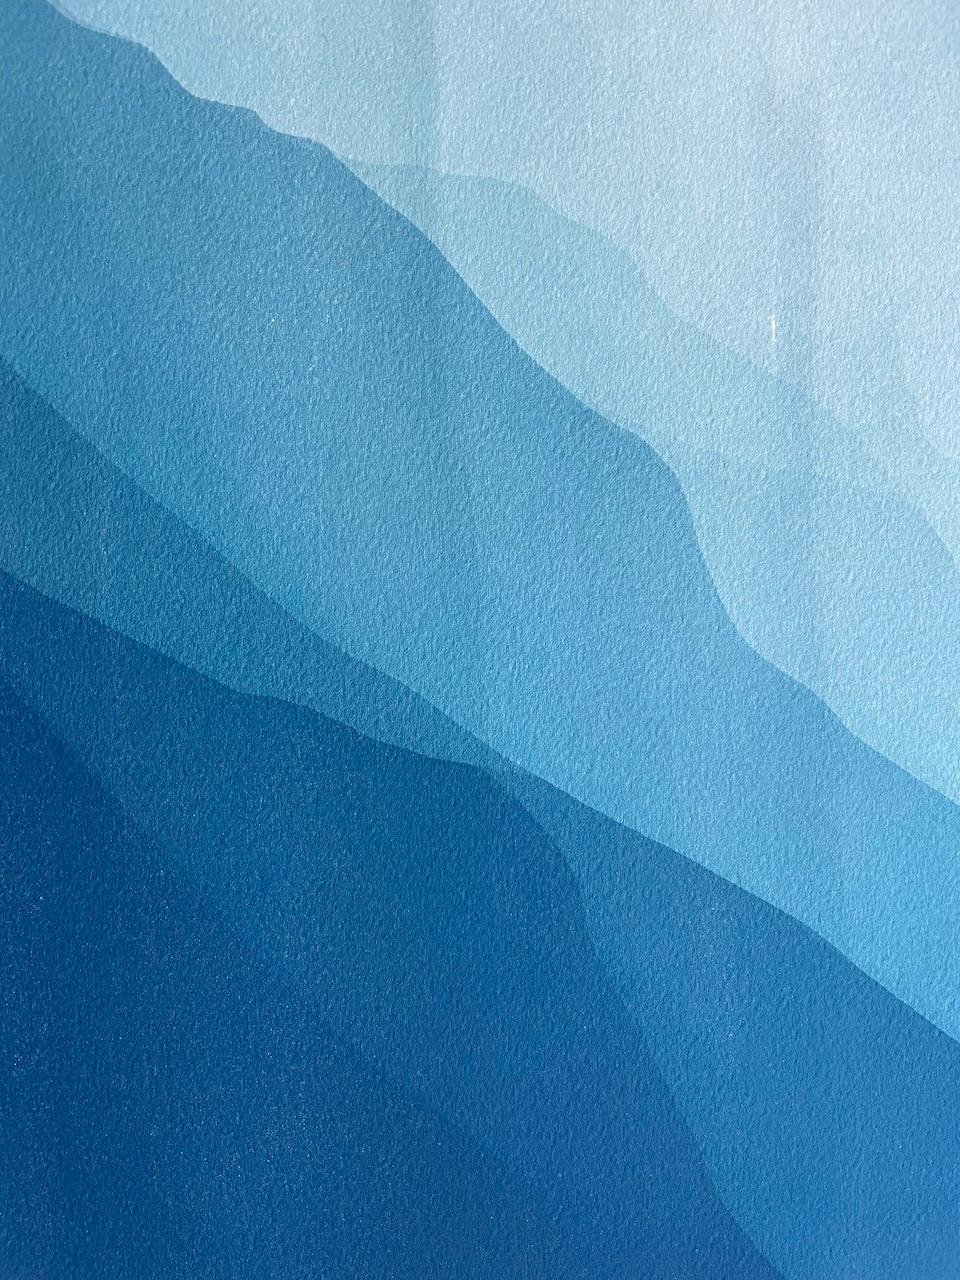 Sea Cliffs 6 (Handgedruckte abstrakte Cyanotypie von 40 x 20 Zoll) – Photograph von Christine So